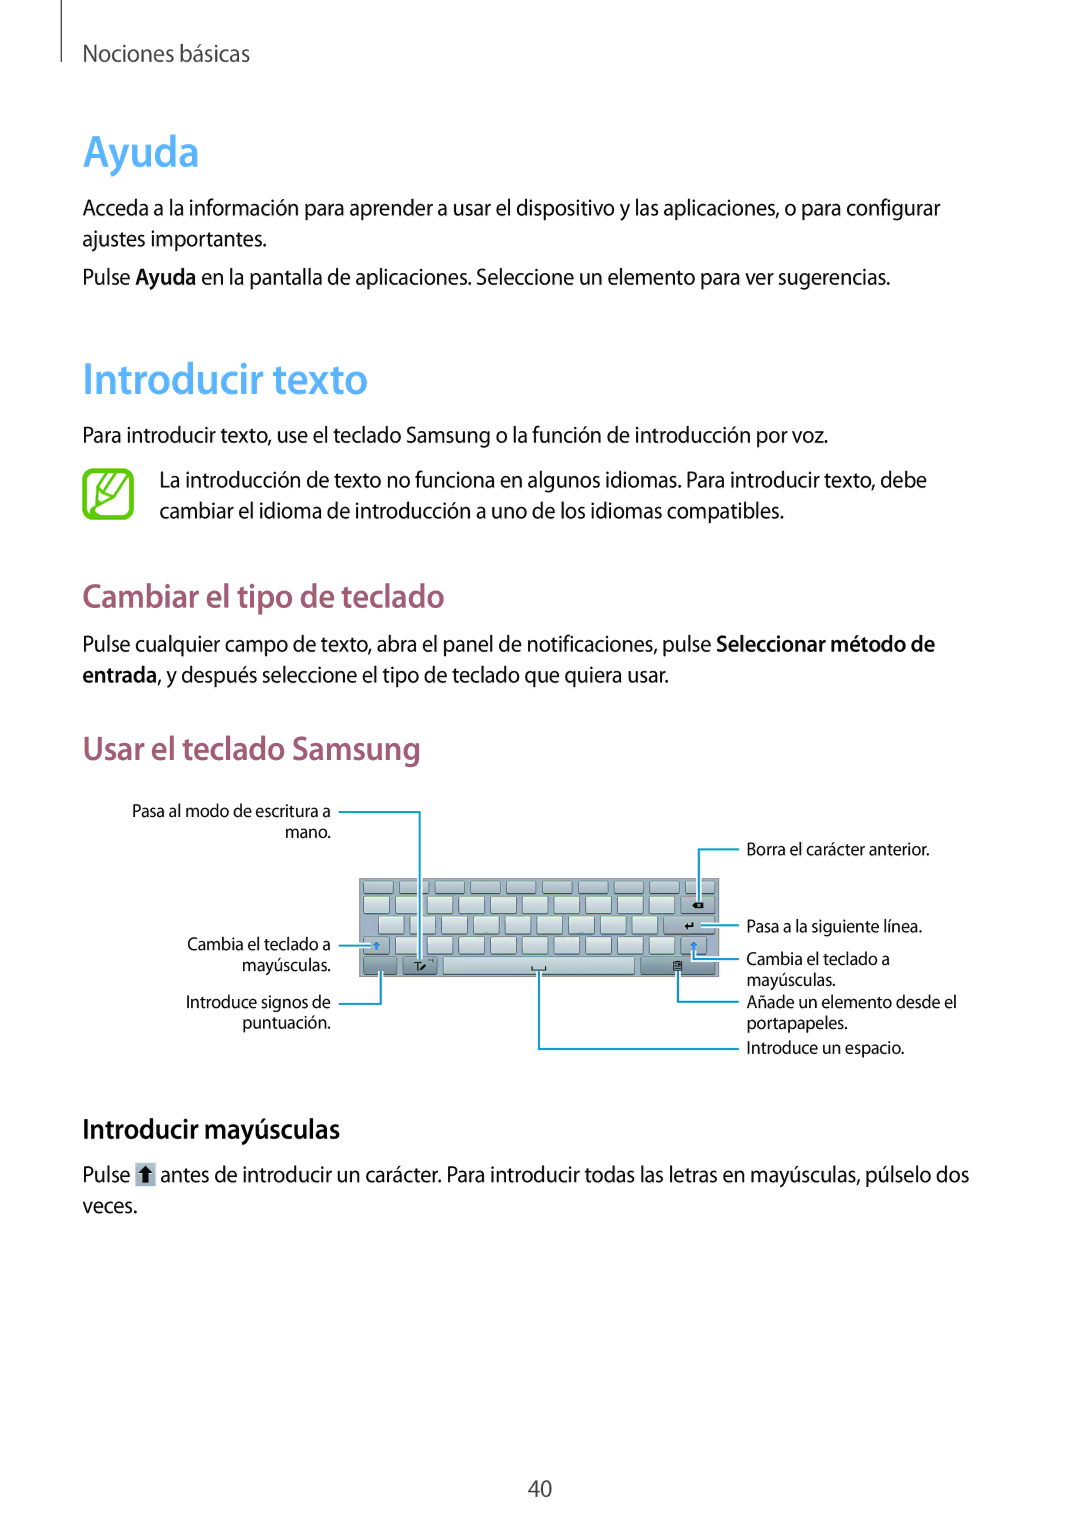 Samsung GT-N8020EAAATL Ayuda, Introducir texto, Cambiar el tipo de teclado, Usar el teclado Samsung, Introducir mayúsculas 